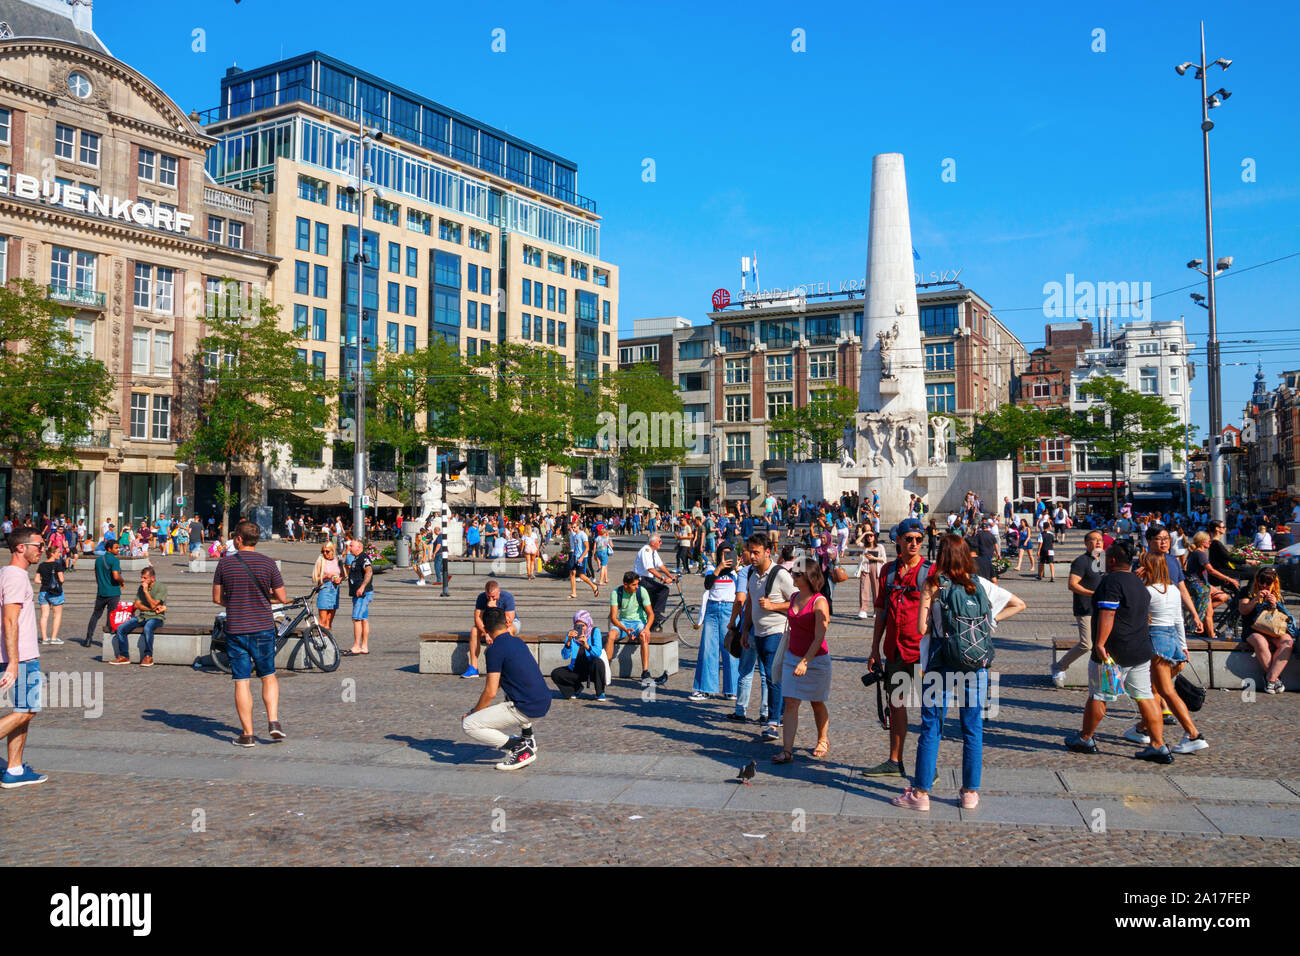 Der Dam Platz mit dem Nationalen Monument, überfüllt mit Touristen. Dam Square ist eine wichtige touristische Attraktion von Amsterdam, Niederlande. Stockfoto